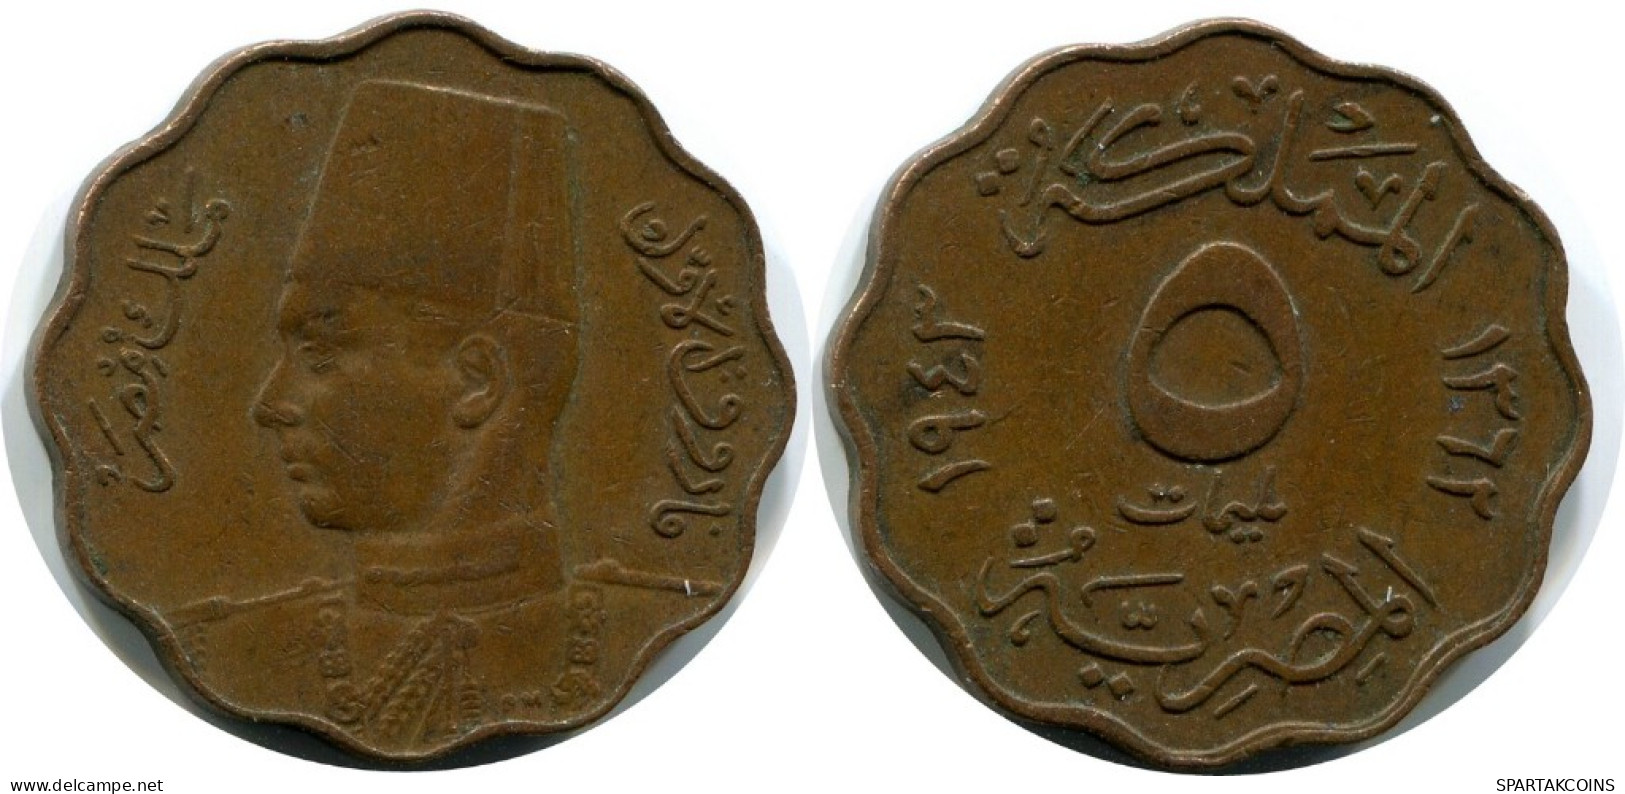 5 MILLIEMES 1943 ÄGYPTEN EGYPT Islamisch Münze #AK256.D.A - Egipto